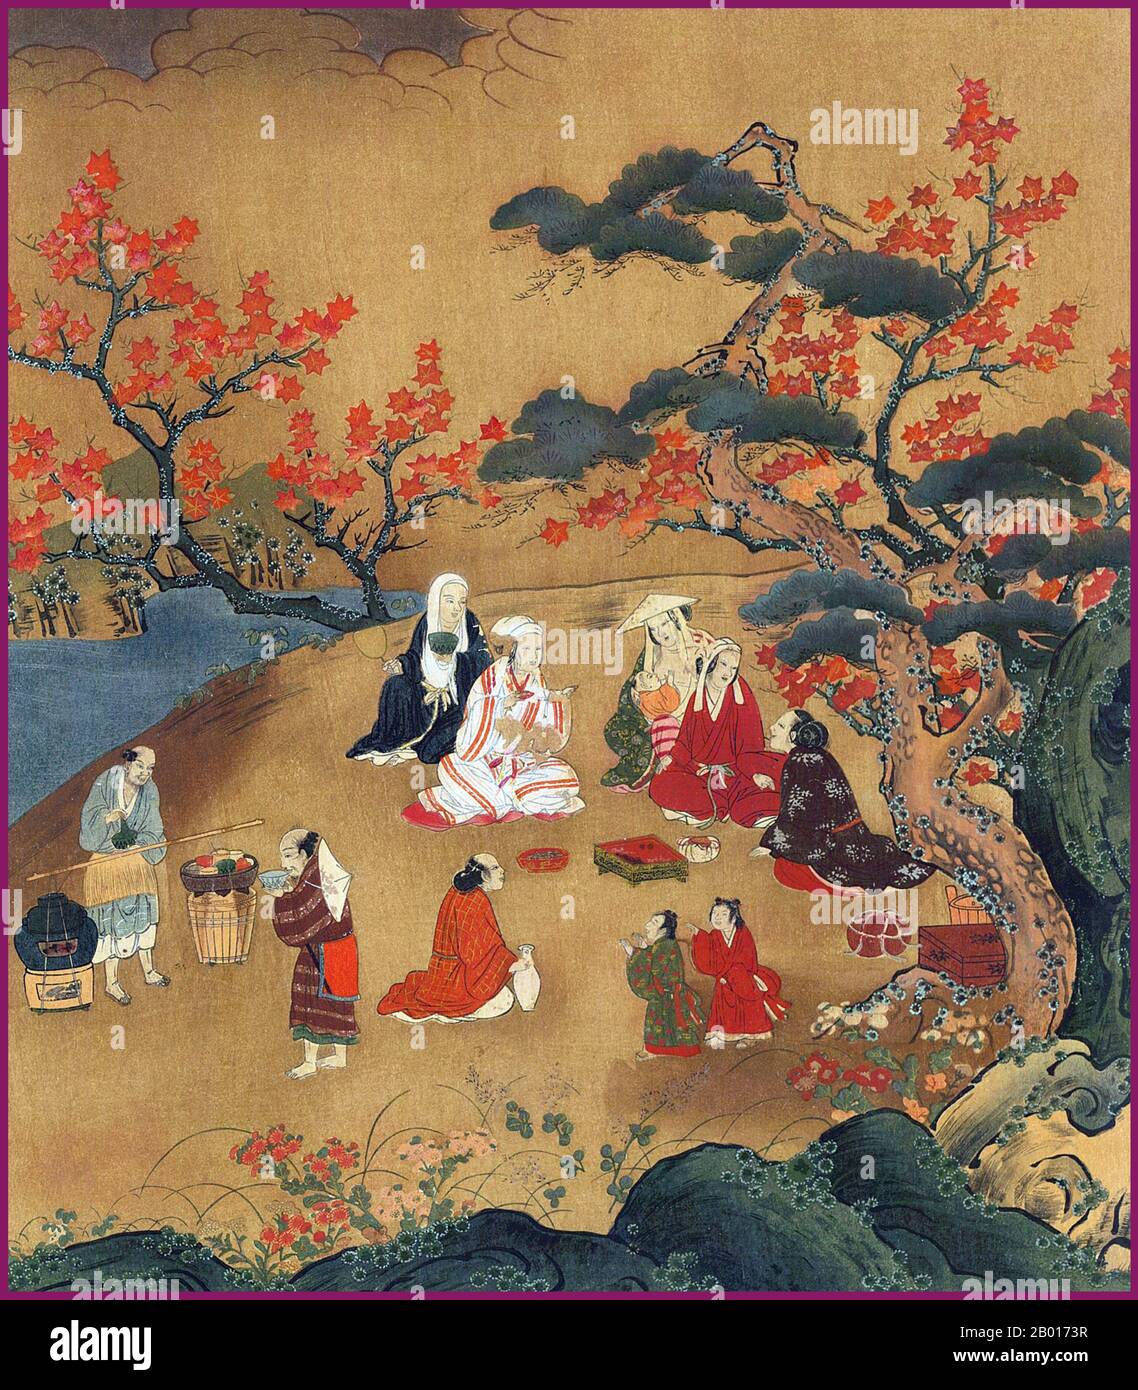 Japon: «femmes regardant les Maple Trees à Takao, près de Kyoto».Illustration de Kano Hideyori (période de Muromachi, XVIe siècle).Yamato-e est un style de peinture japonaise inspiré des peintures de la dynastie Tang et développé à la fin de la période Heian.Il est considéré comme le style japonais classique.Depuis la période Muromachi (XVe siècle), le terme Yamato-e a été utilisé pour distinguer les œuvres des peintures de style chinois contemporain (kara-e), inspirées par les peintures du bouddhisme zen de la dynastie Song et Yuan. Banque D'Images